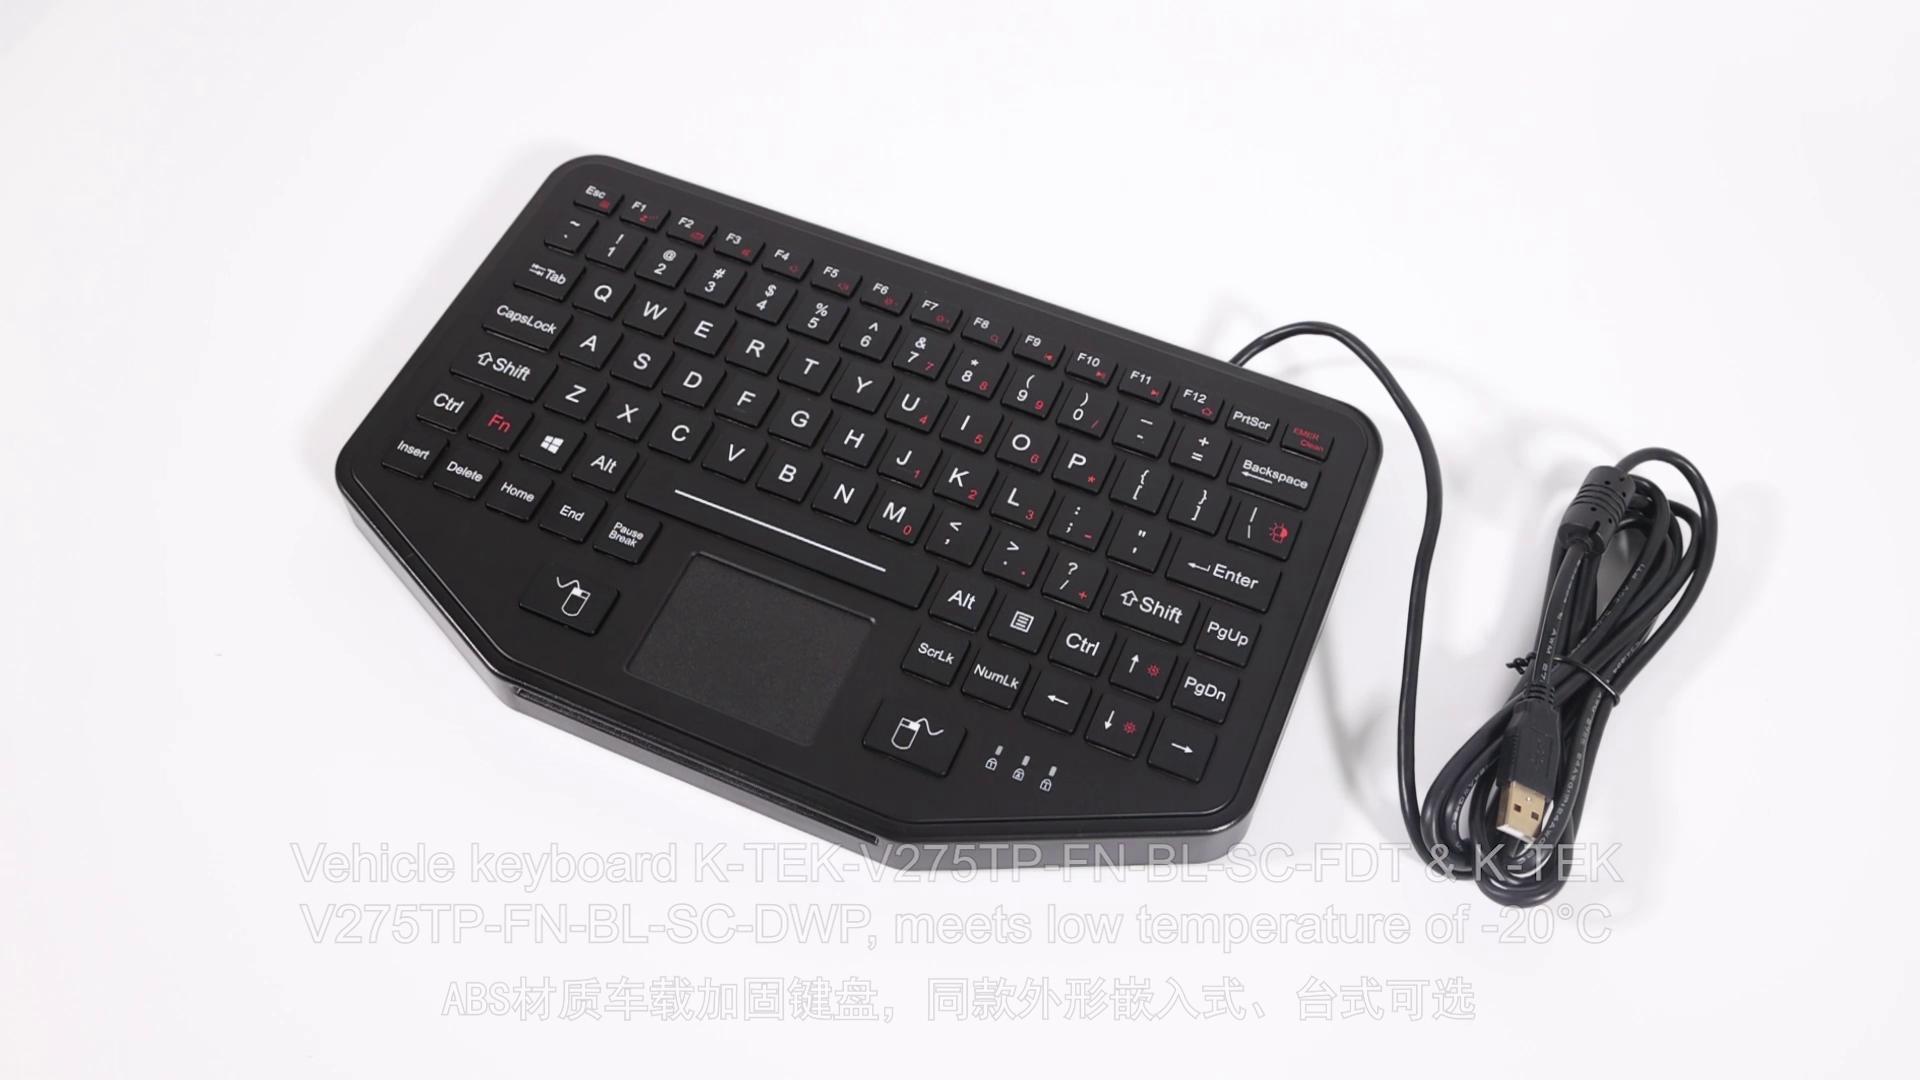 K-TEK-V275TP-FN-BL-SC-DWP scissors switch plastic keyboard